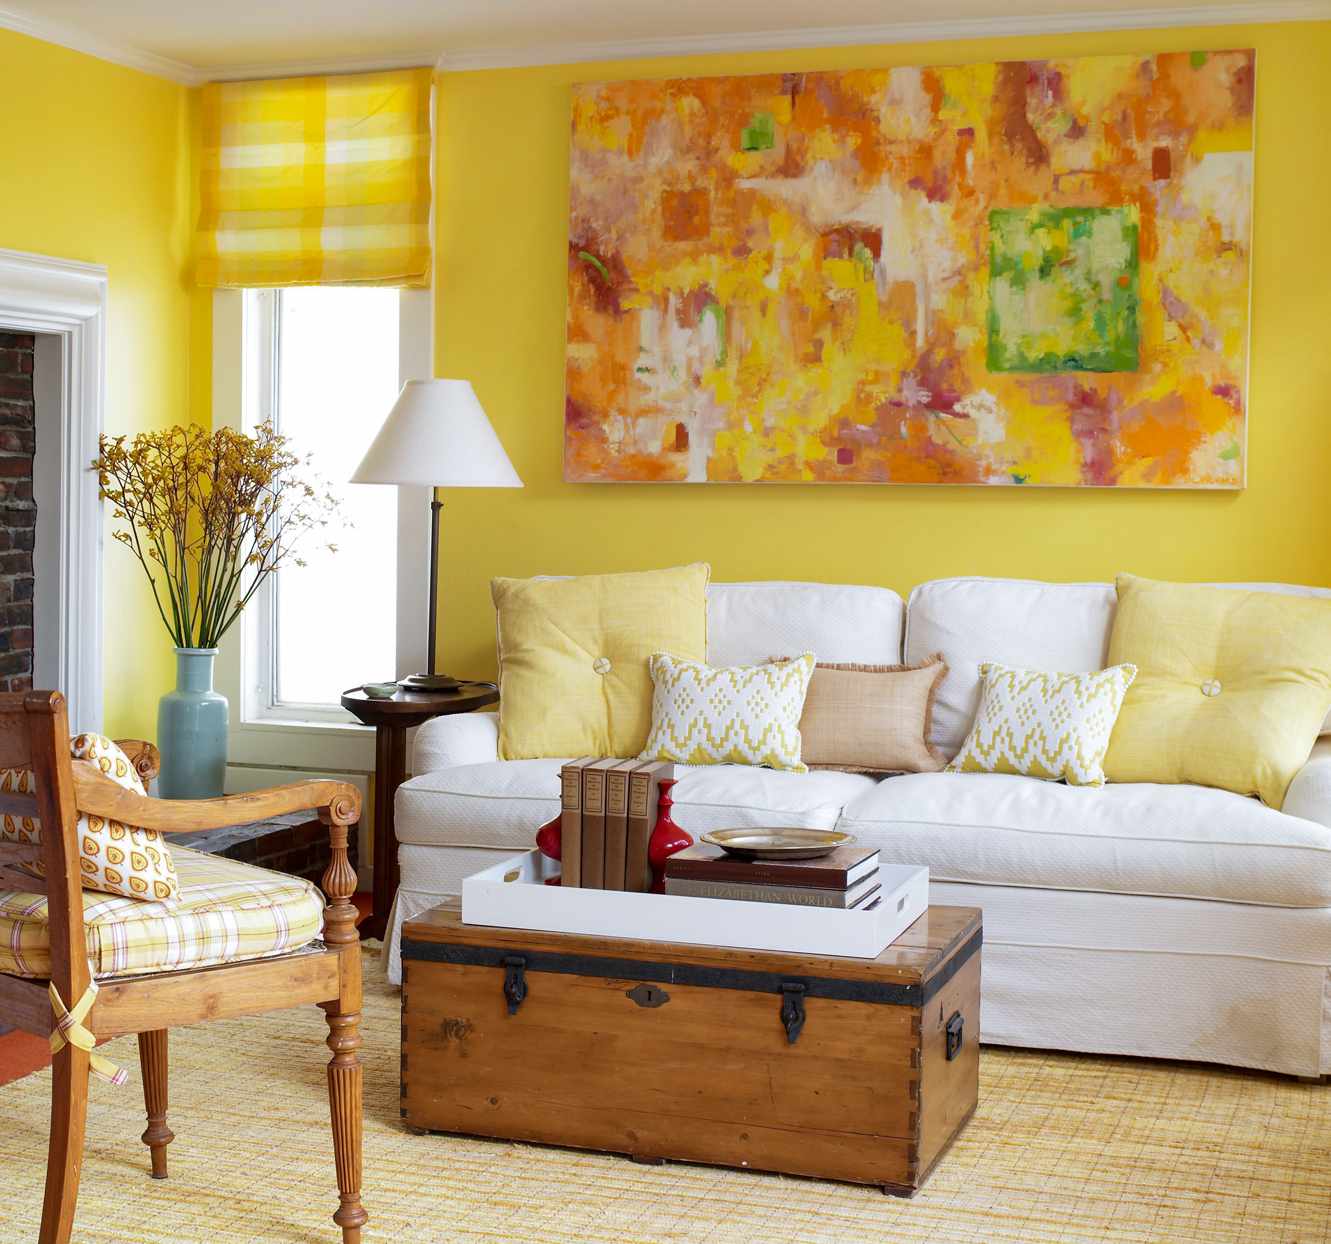 Цвета стен в интерьере гостиной. Желтый интерьер. Желтый цвет в интерьере. Желтые стены в интерьере. Интерьер в желтых тонах.